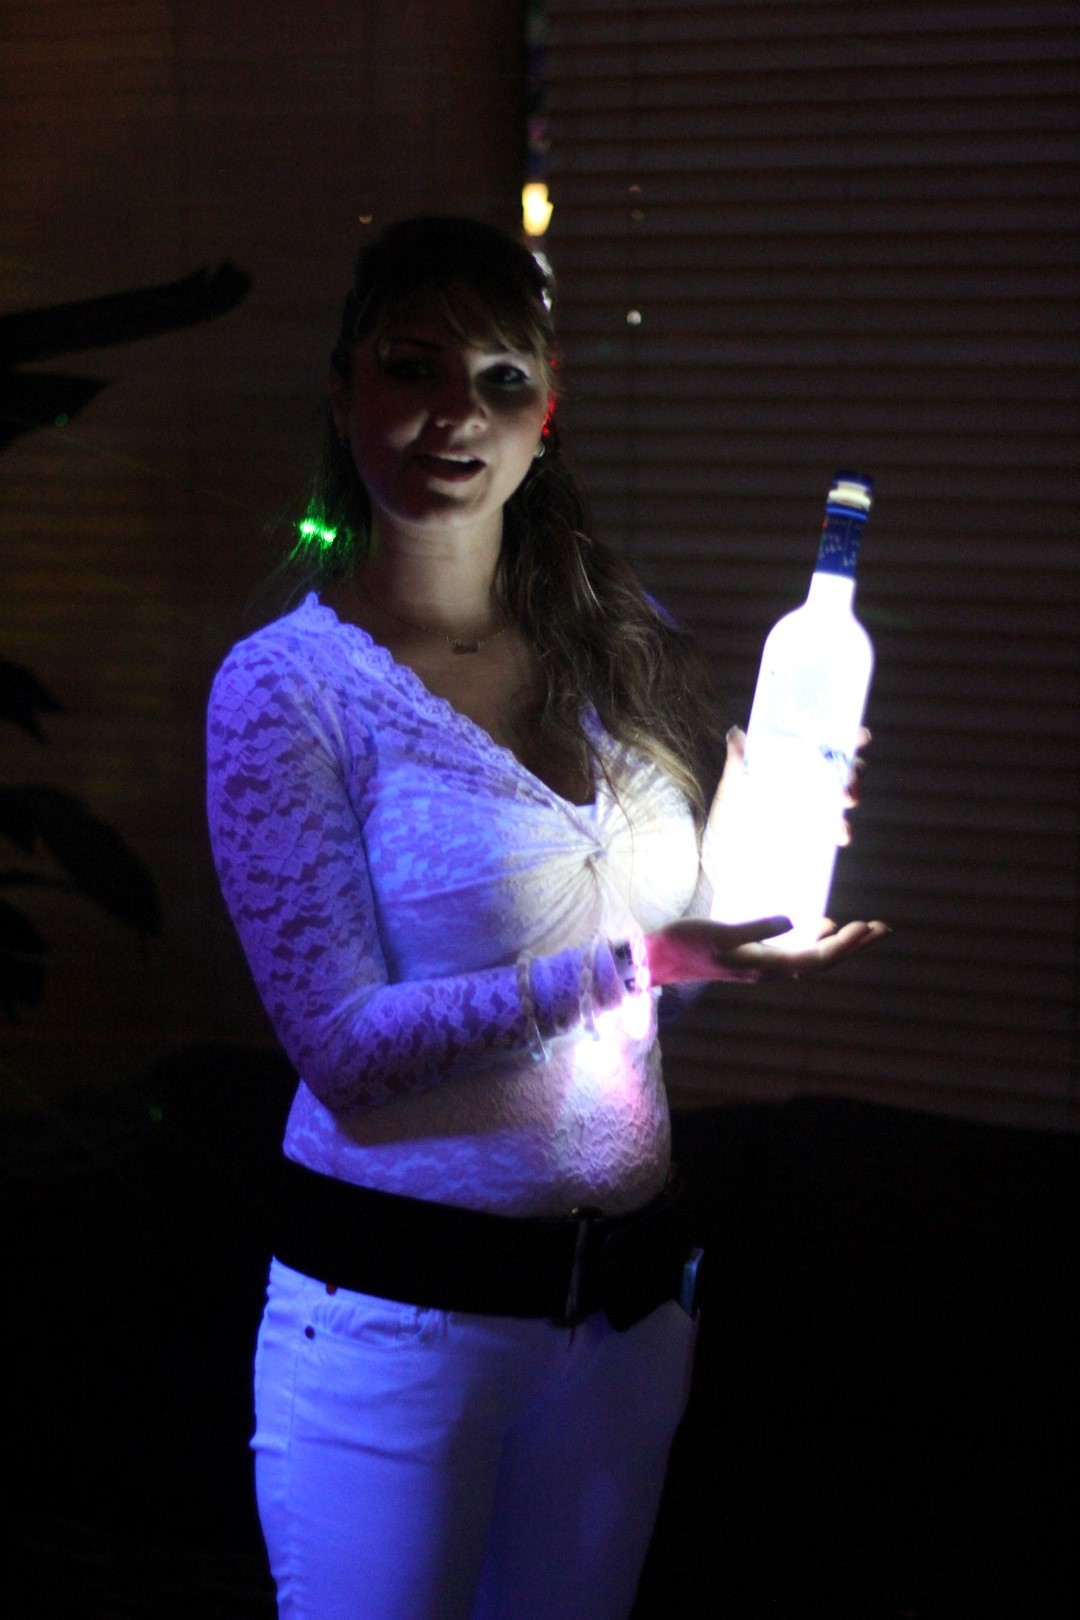 led-bottle-glorifier-bottle-coaster-glow-led-light-nightclubshop.jpg